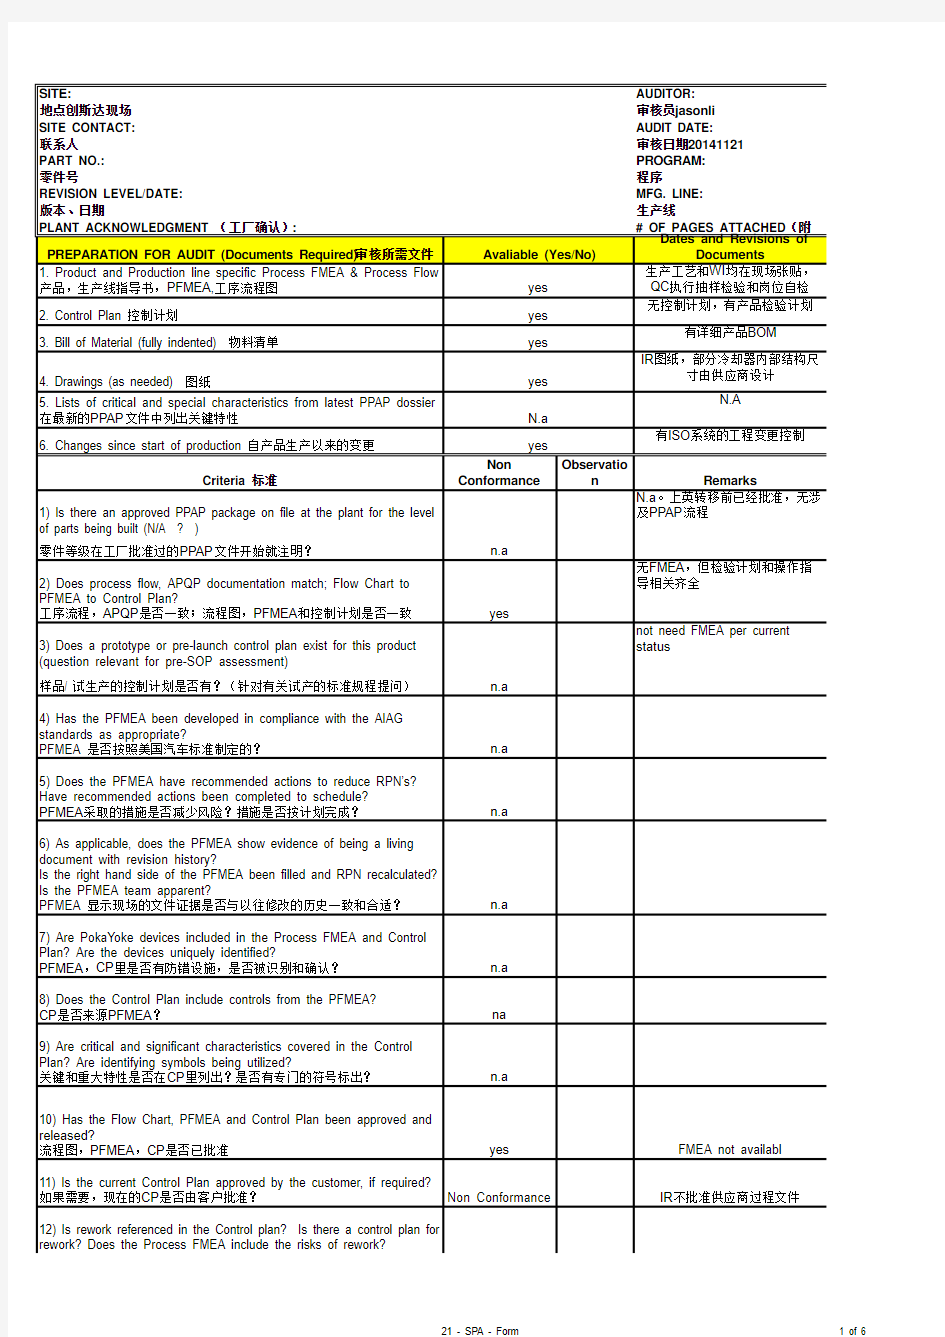 20141121供应商过程审核表QMOD-0010_(中文)